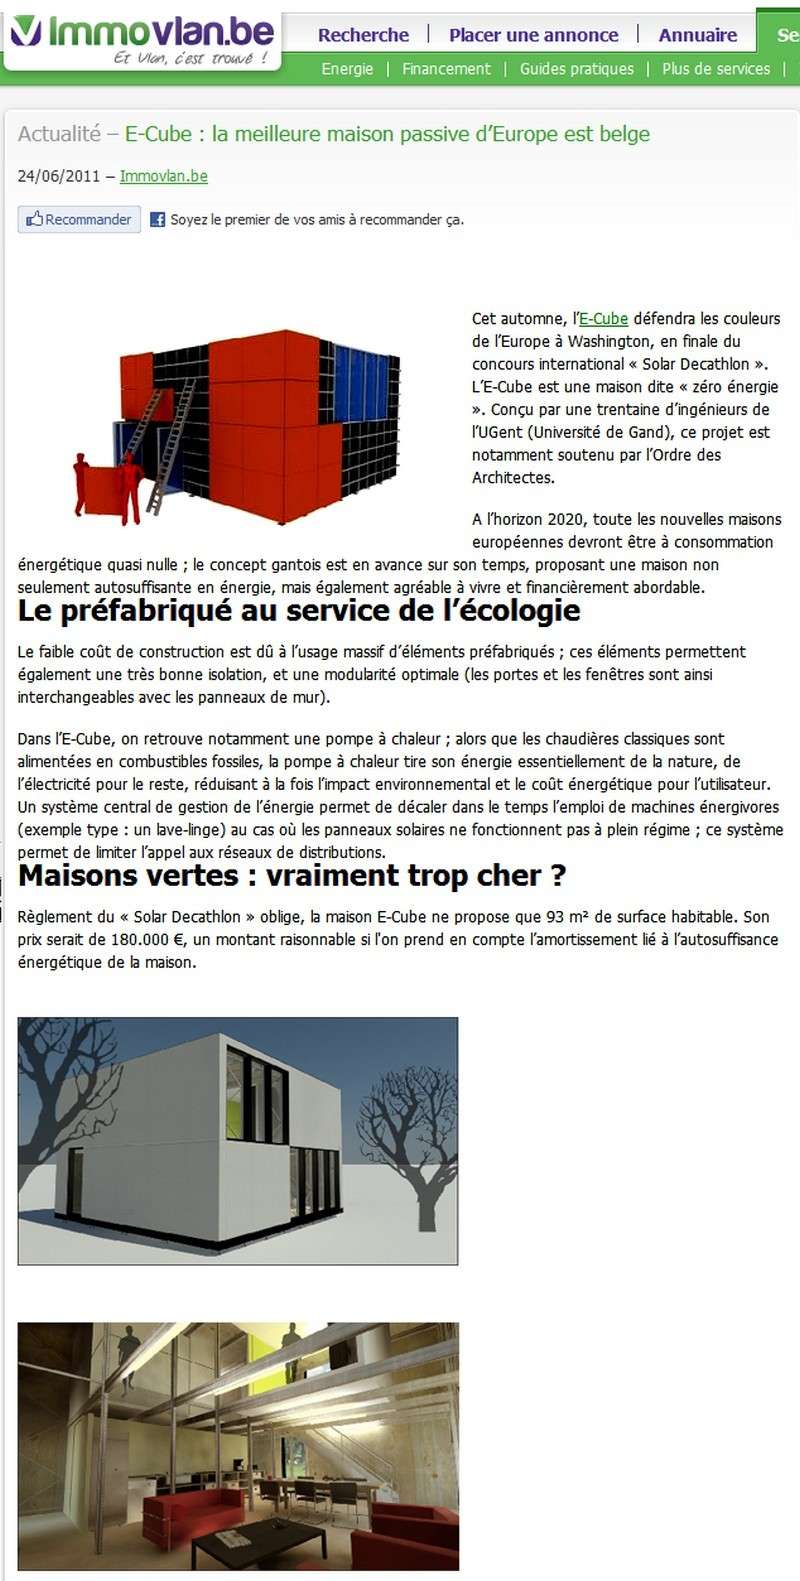 concept belge proposant une maison non seulement autosuffisante en énergie, agréable à vivre et au coût abordable 01174